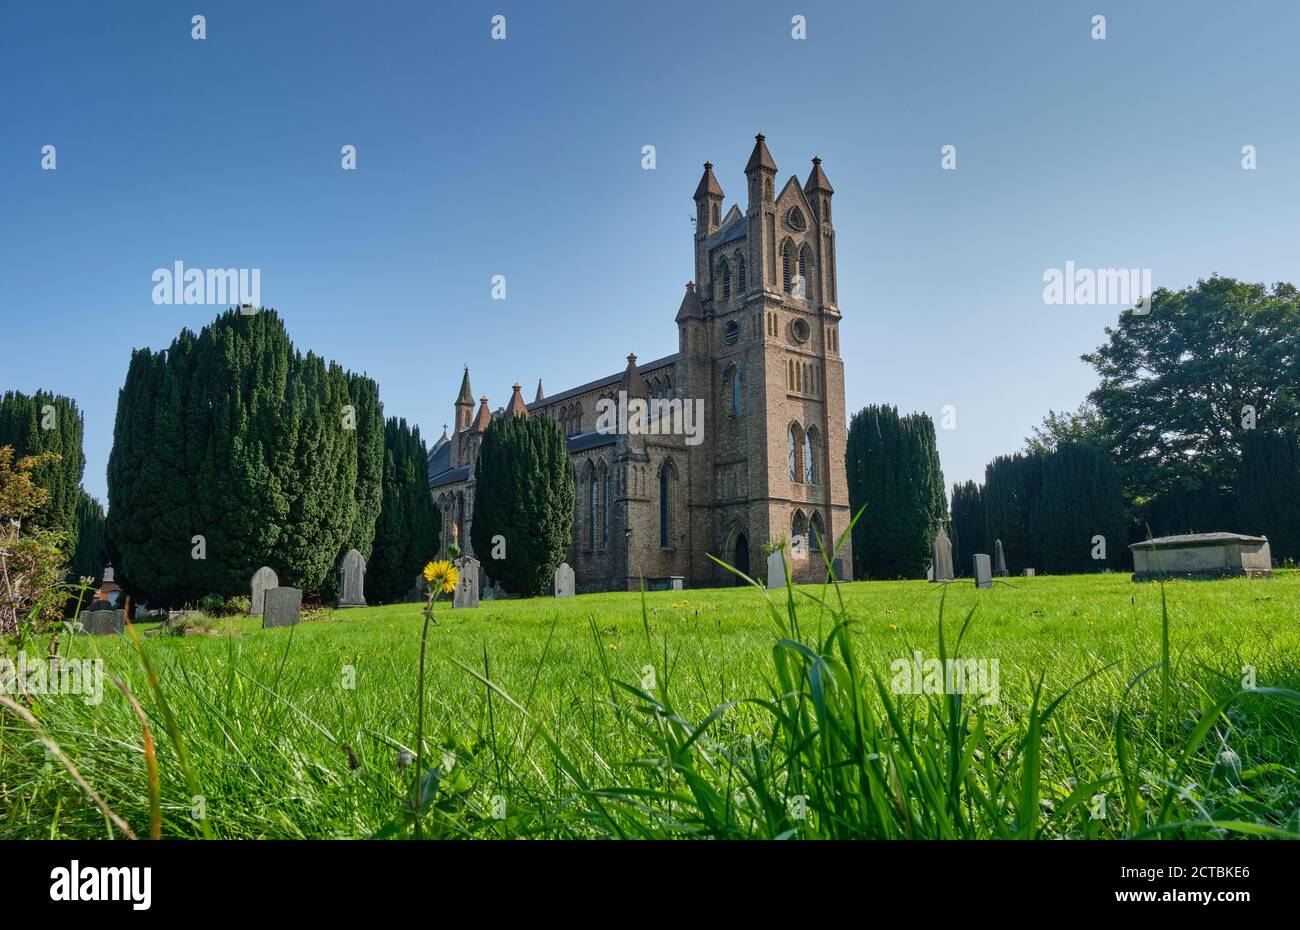 St David's Church, Newtown, Powys, Wales Stock Photo